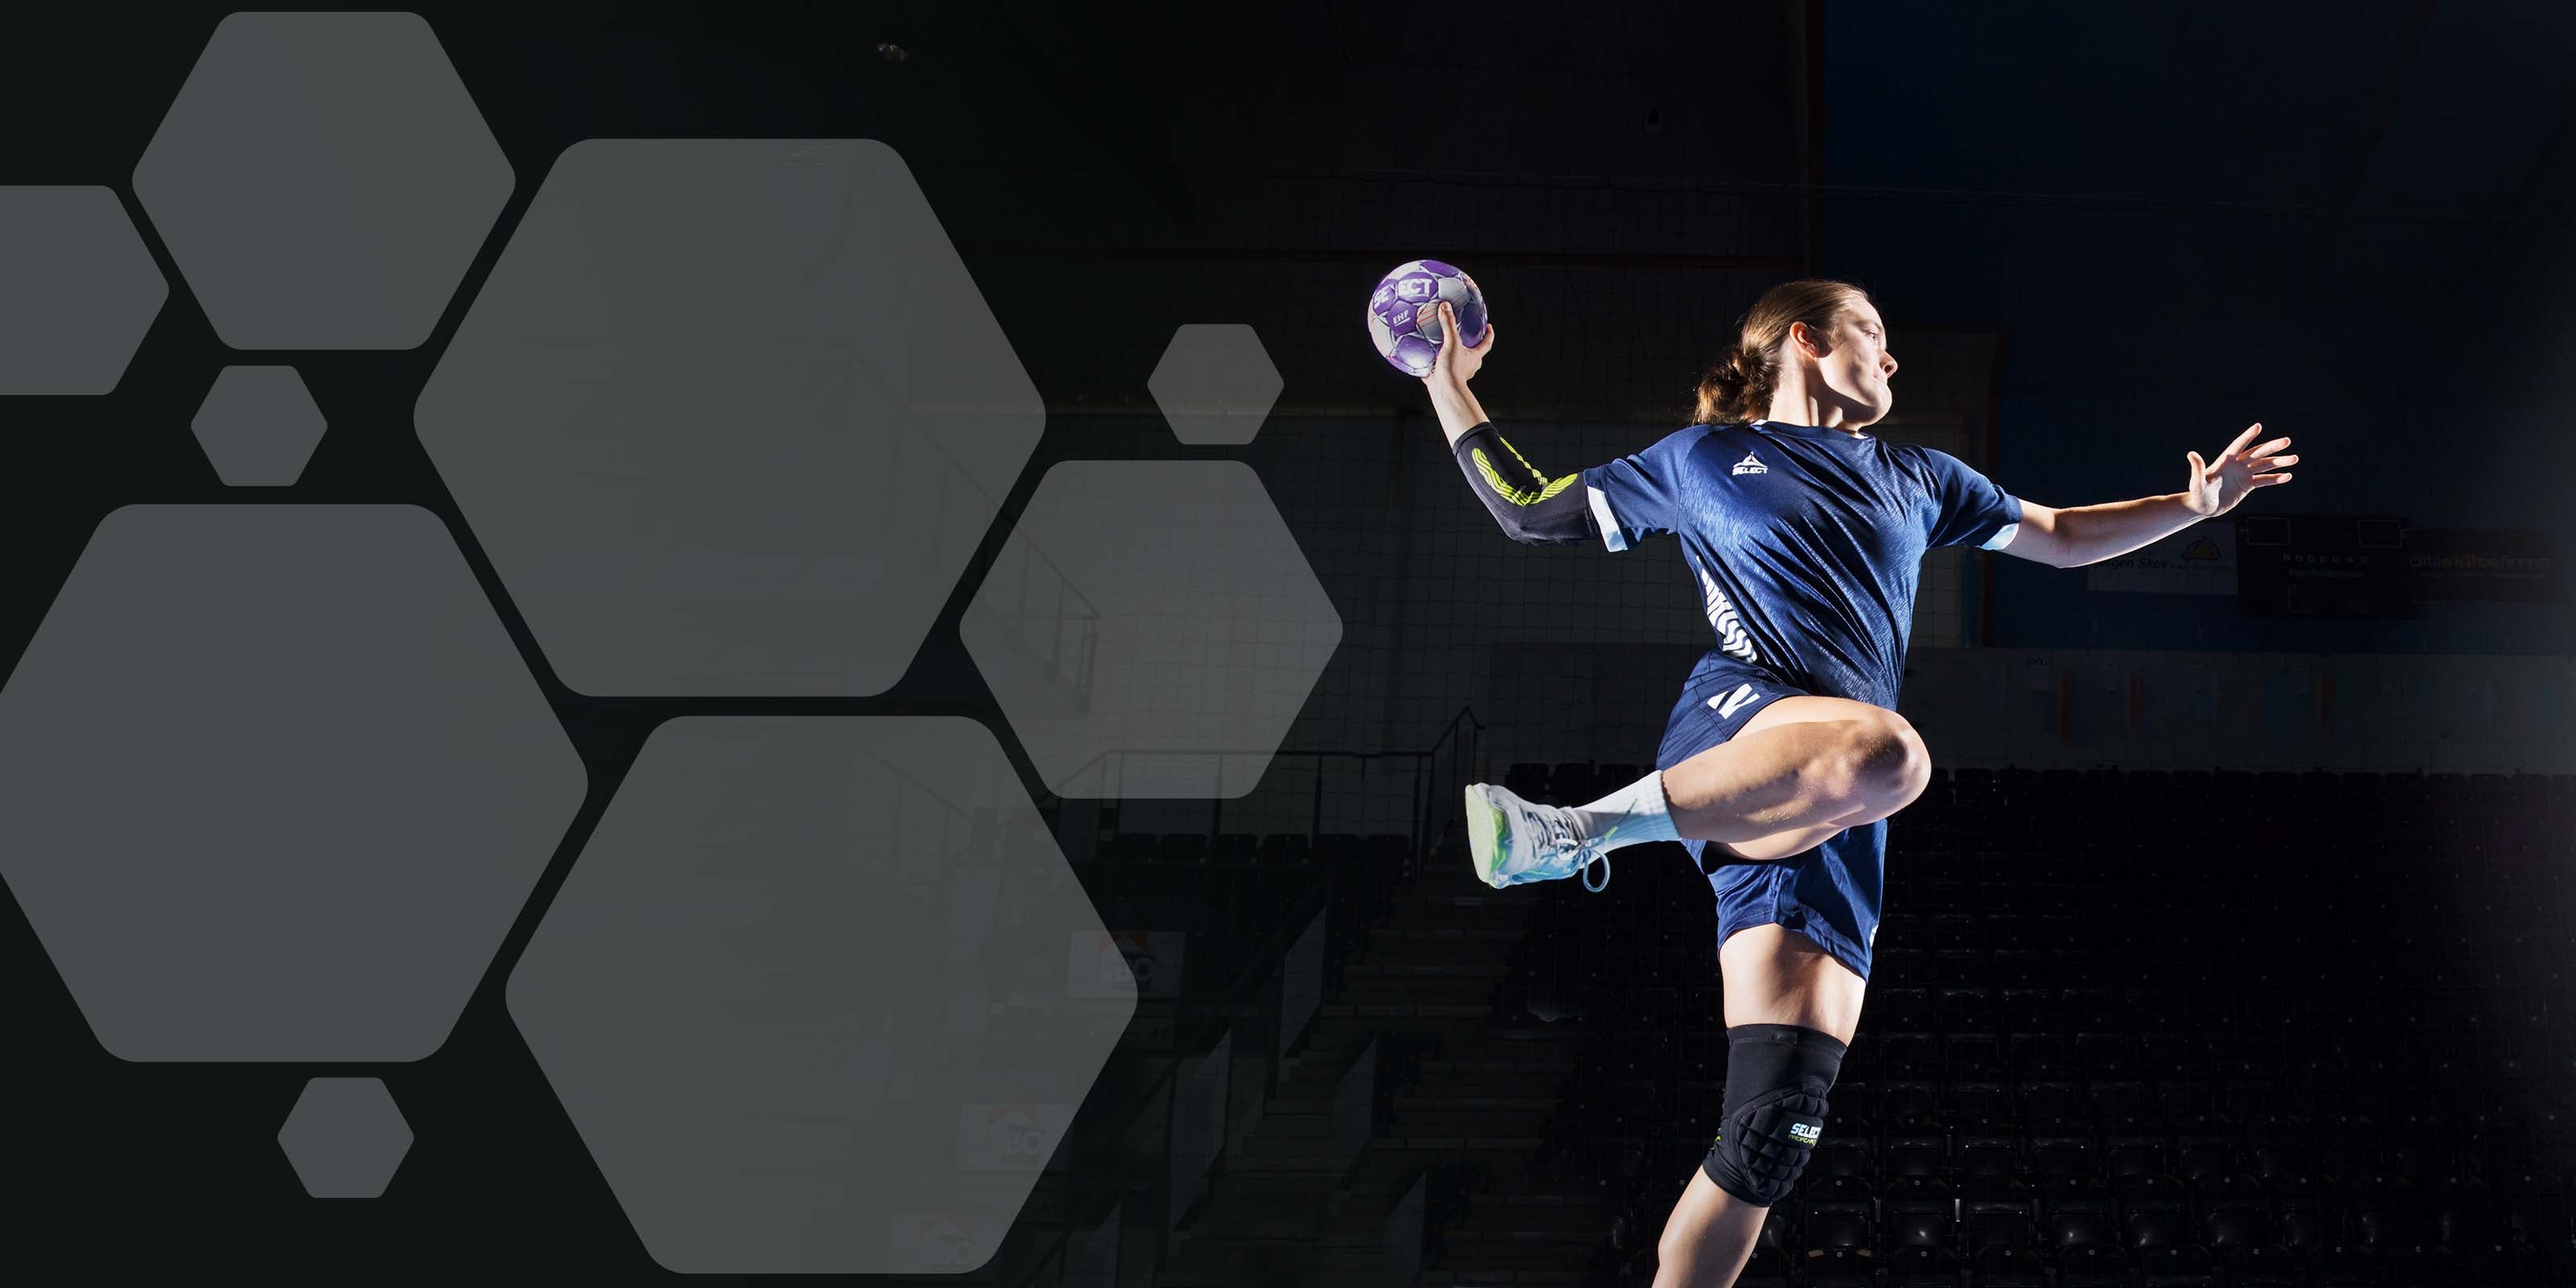 Handballs for professionals